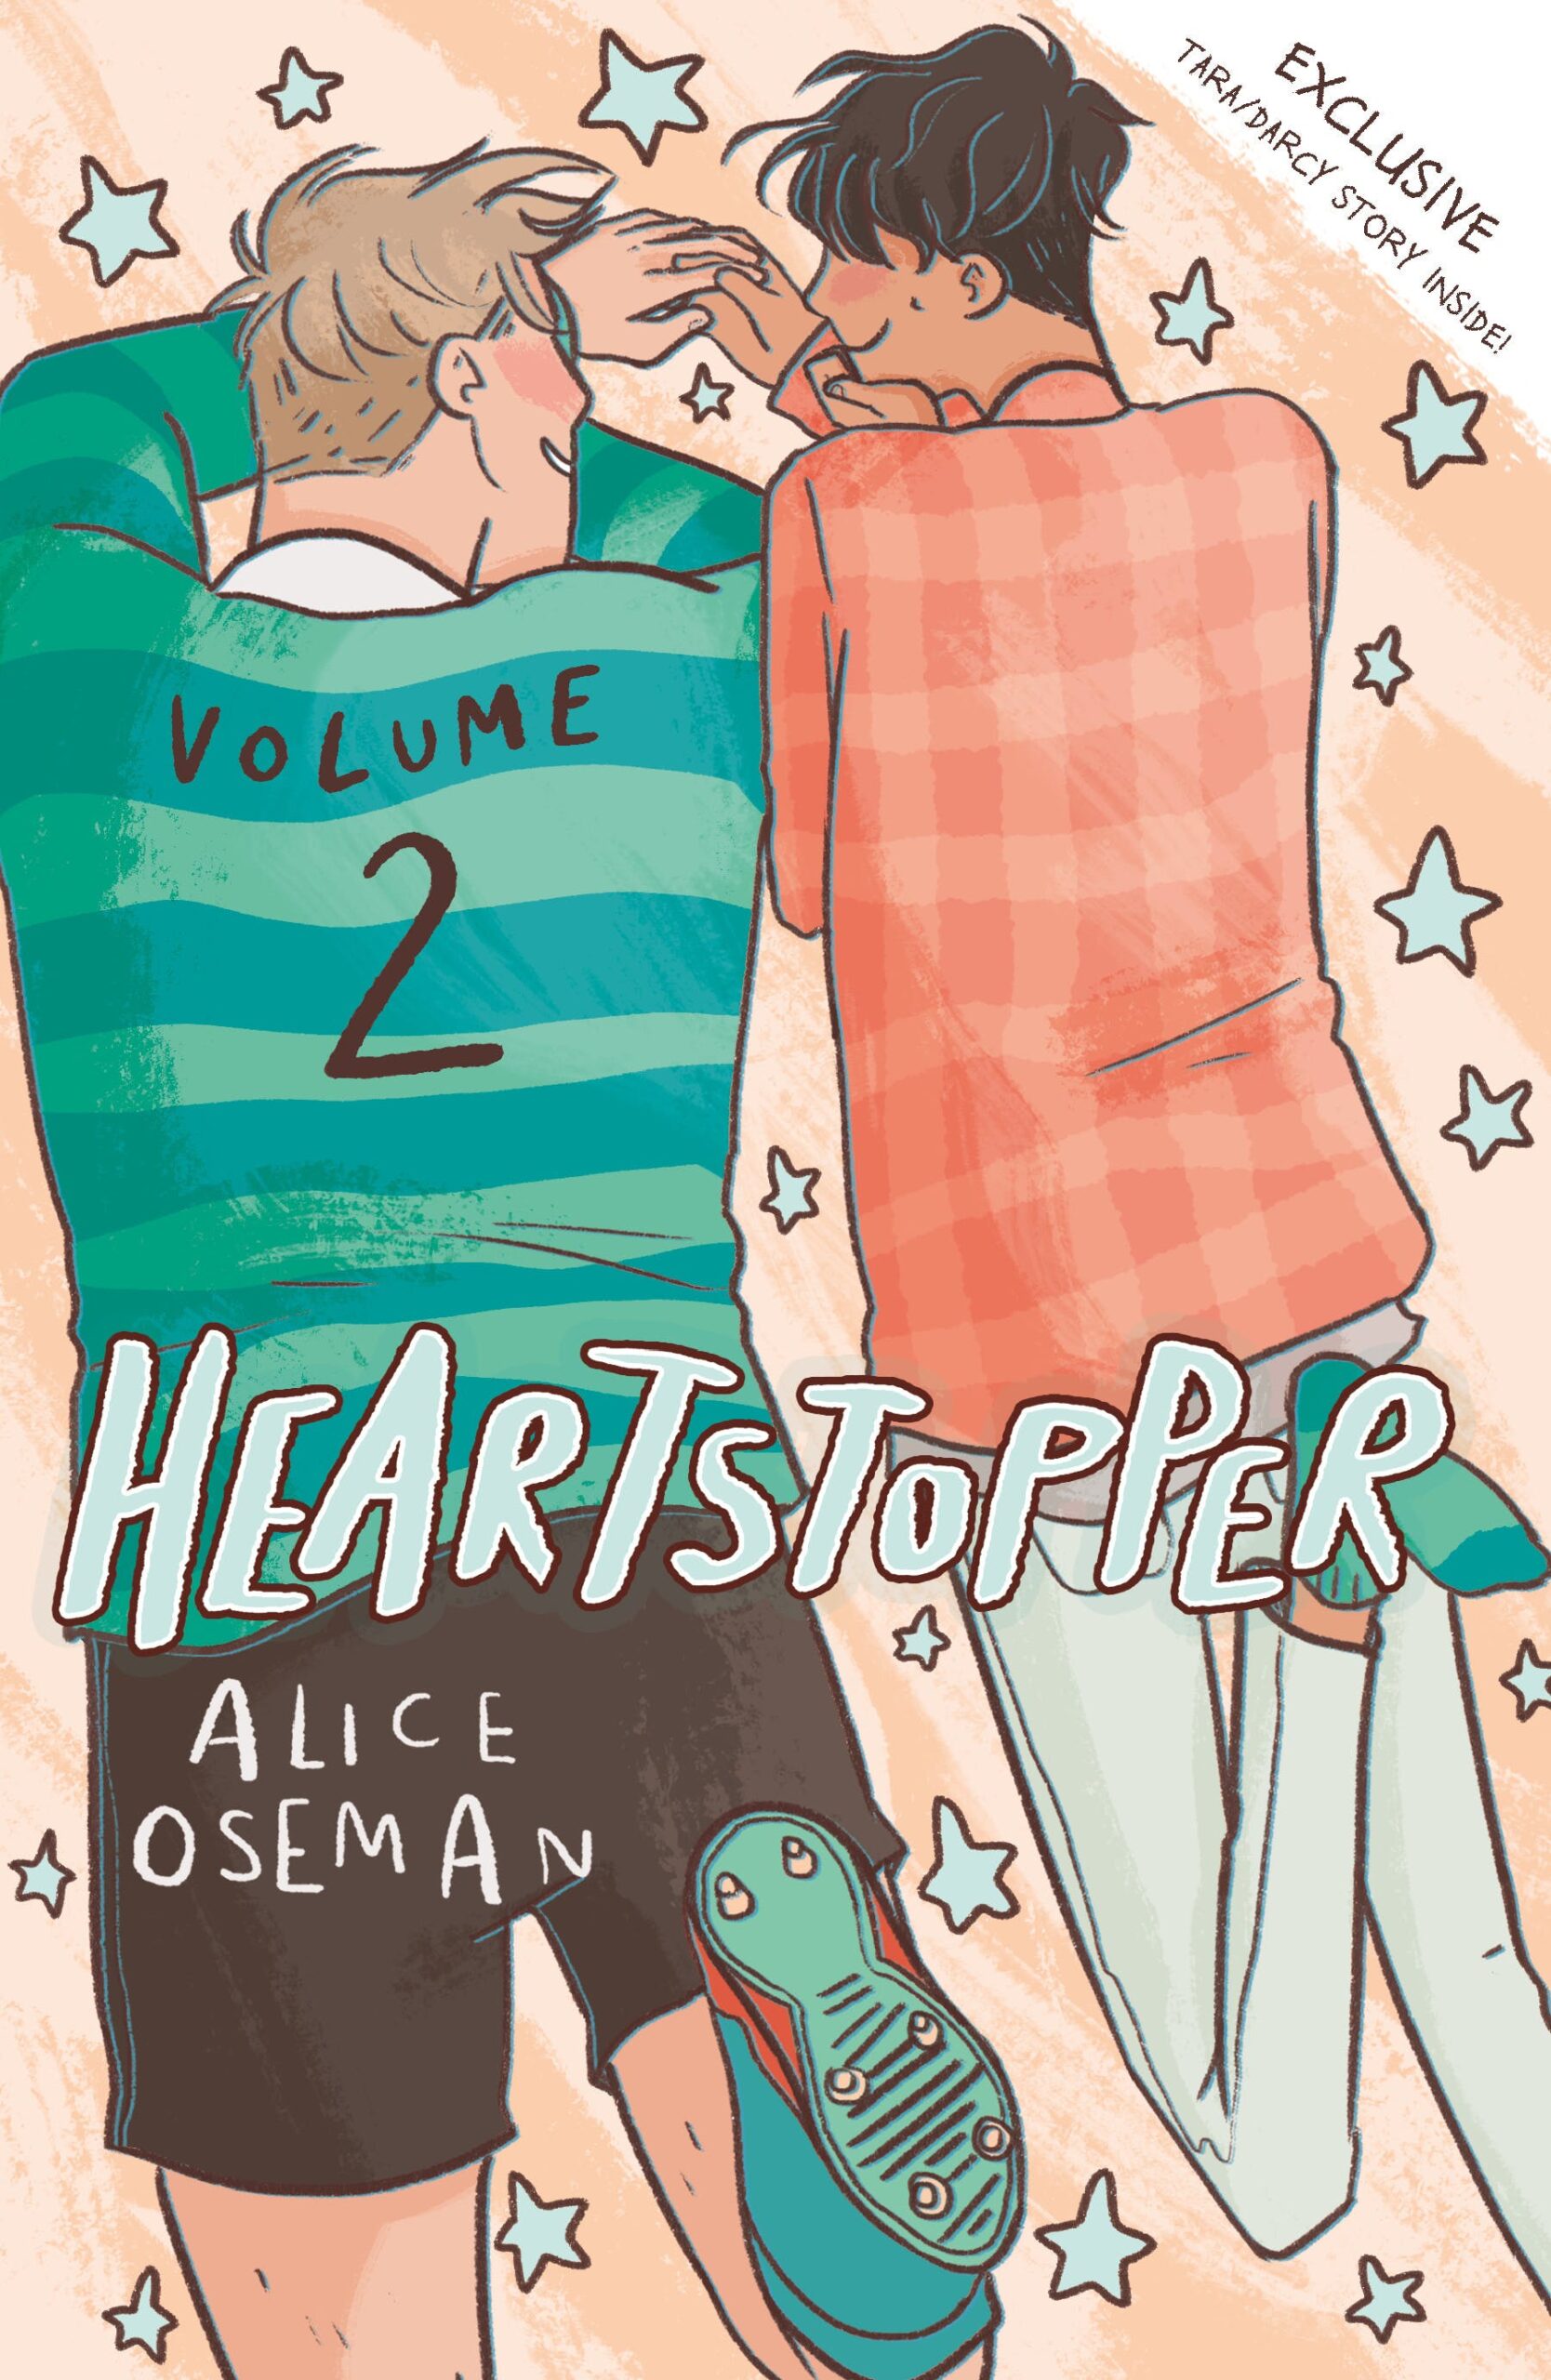 Heartstopper By Alice Oseman